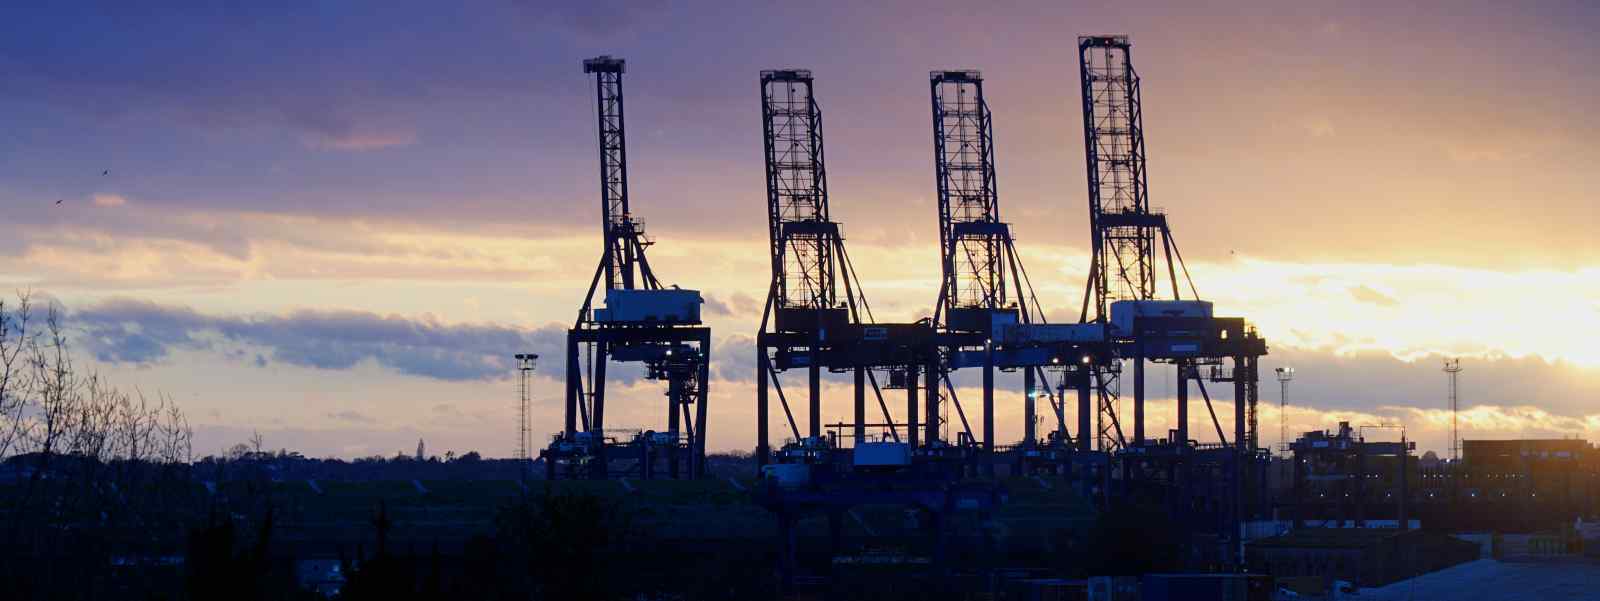 Cranes for shipbuilding